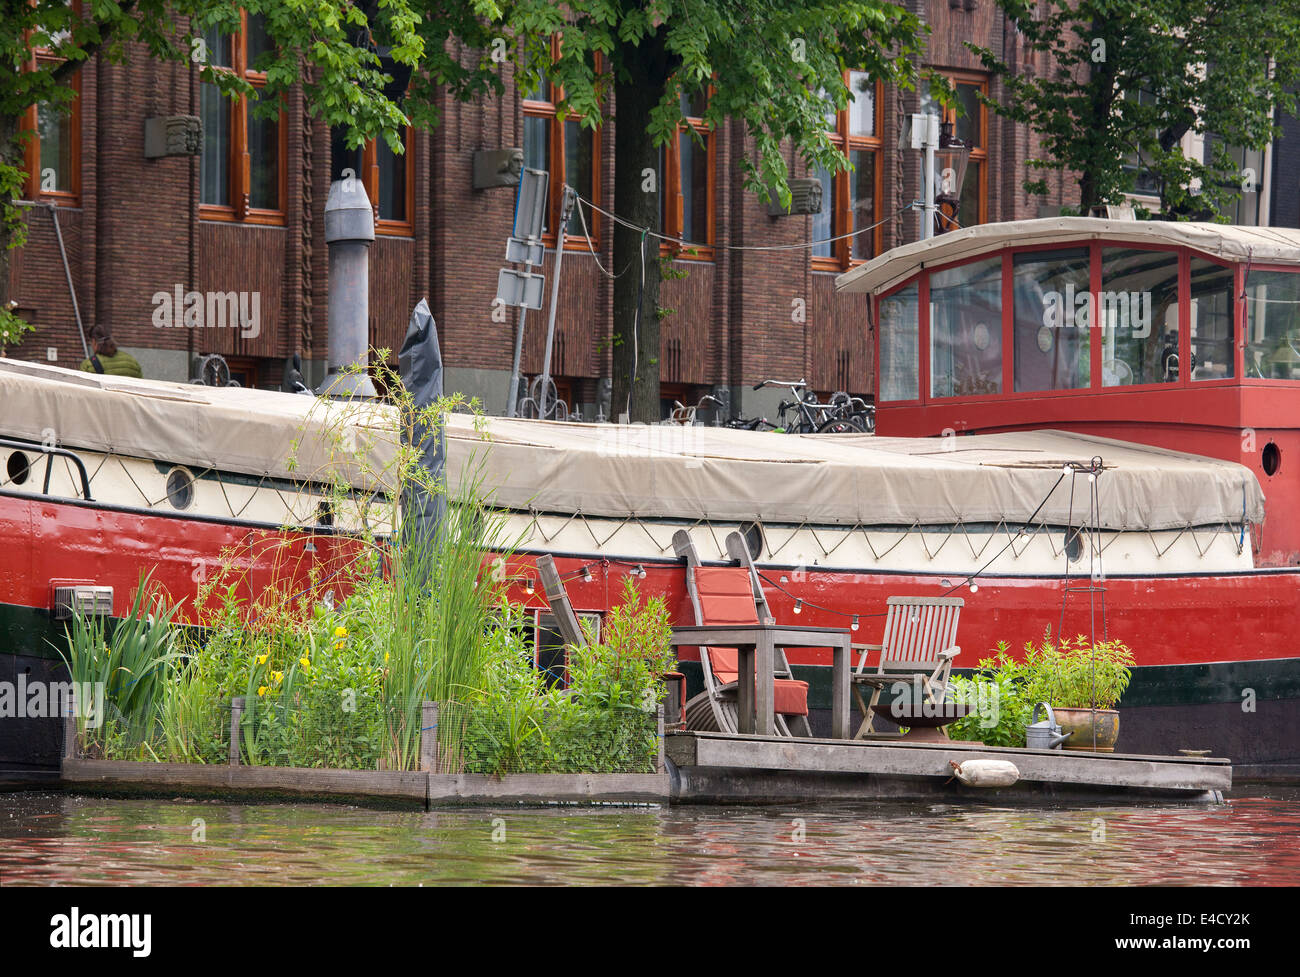 Amsterdam barge boat house avec jardin flottant dans la Kromme Waal Canal, près de l'Hotel Bawelsberger Hof Banque D'Images